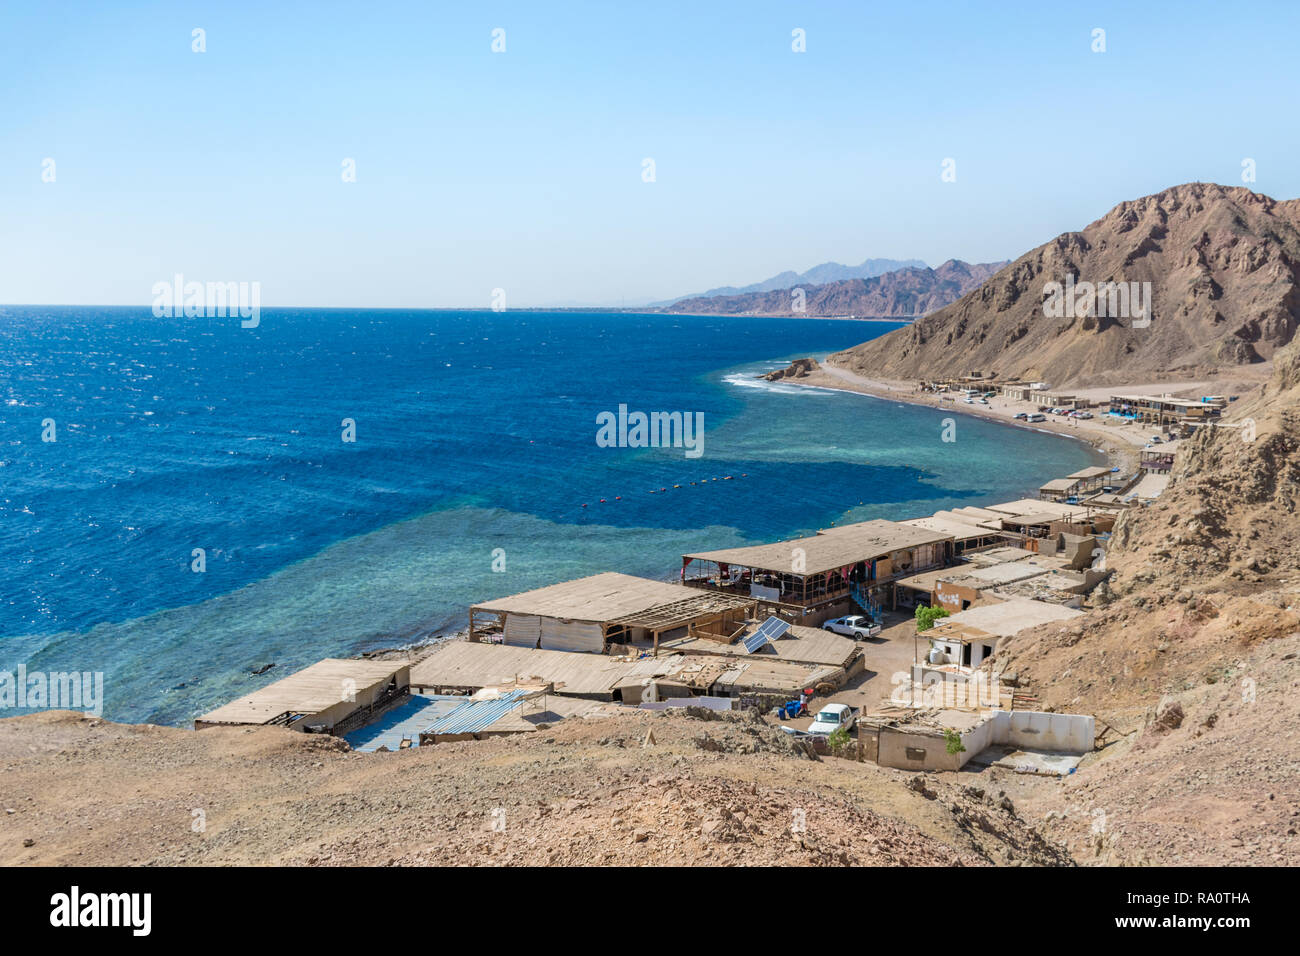 Blue Hole è una popolare località di immersione sul Sinai orientale, a pochi chilometri a nord di Dahab, Egitto sulla costa del Mar Rosso. Foto Stock